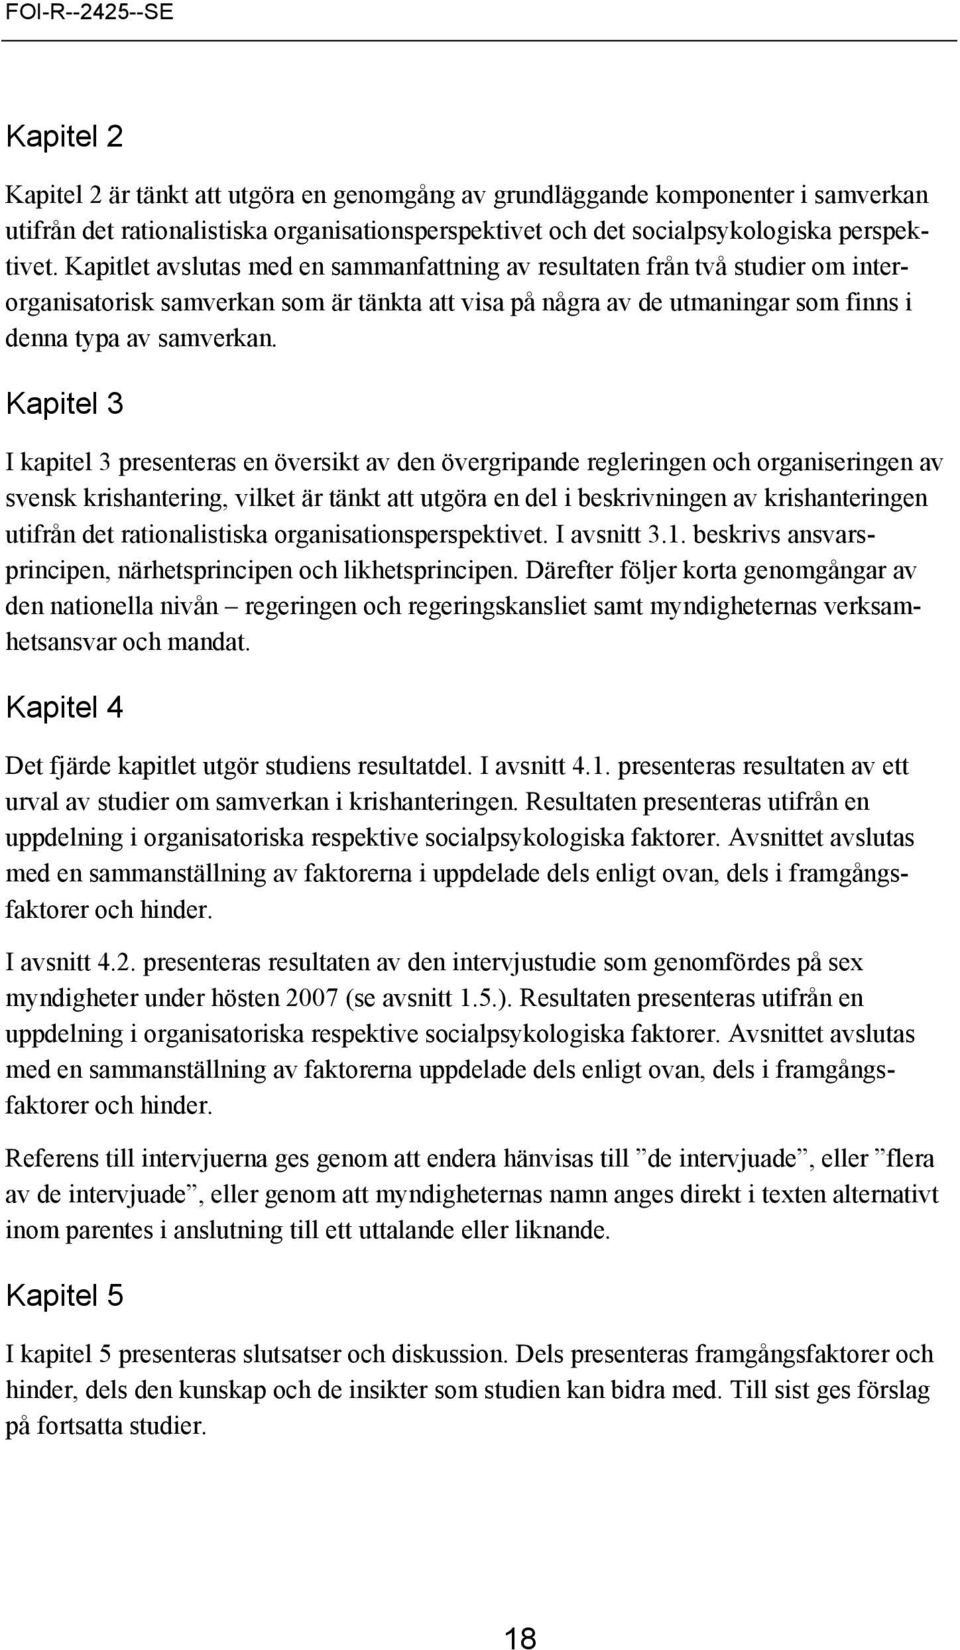 Kapitel 3 I kapitel 3 presenteras en översikt av den övergripande regleringen och organiseringen av svensk krishantering, vilket är tänkt att utgöra en del i beskrivningen av krishanteringen utifrån